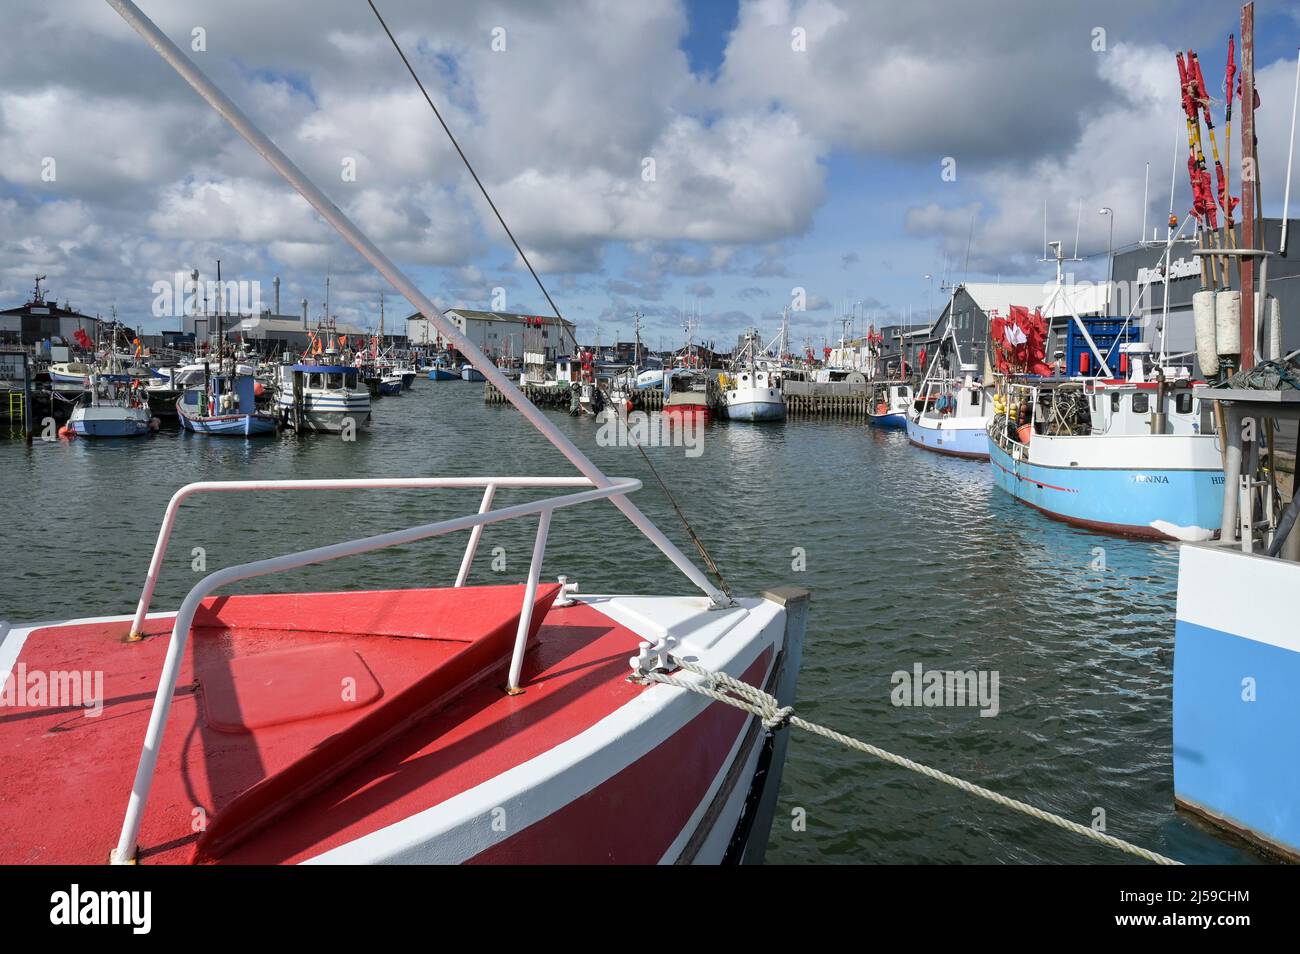 DENMARK, Jutland, Hirtshals, North Sea fishing port with fishing boats / DÄNEMARK, Jütland, Hirtshals, Nordsee Hafen, Fischerboote Stock Photo